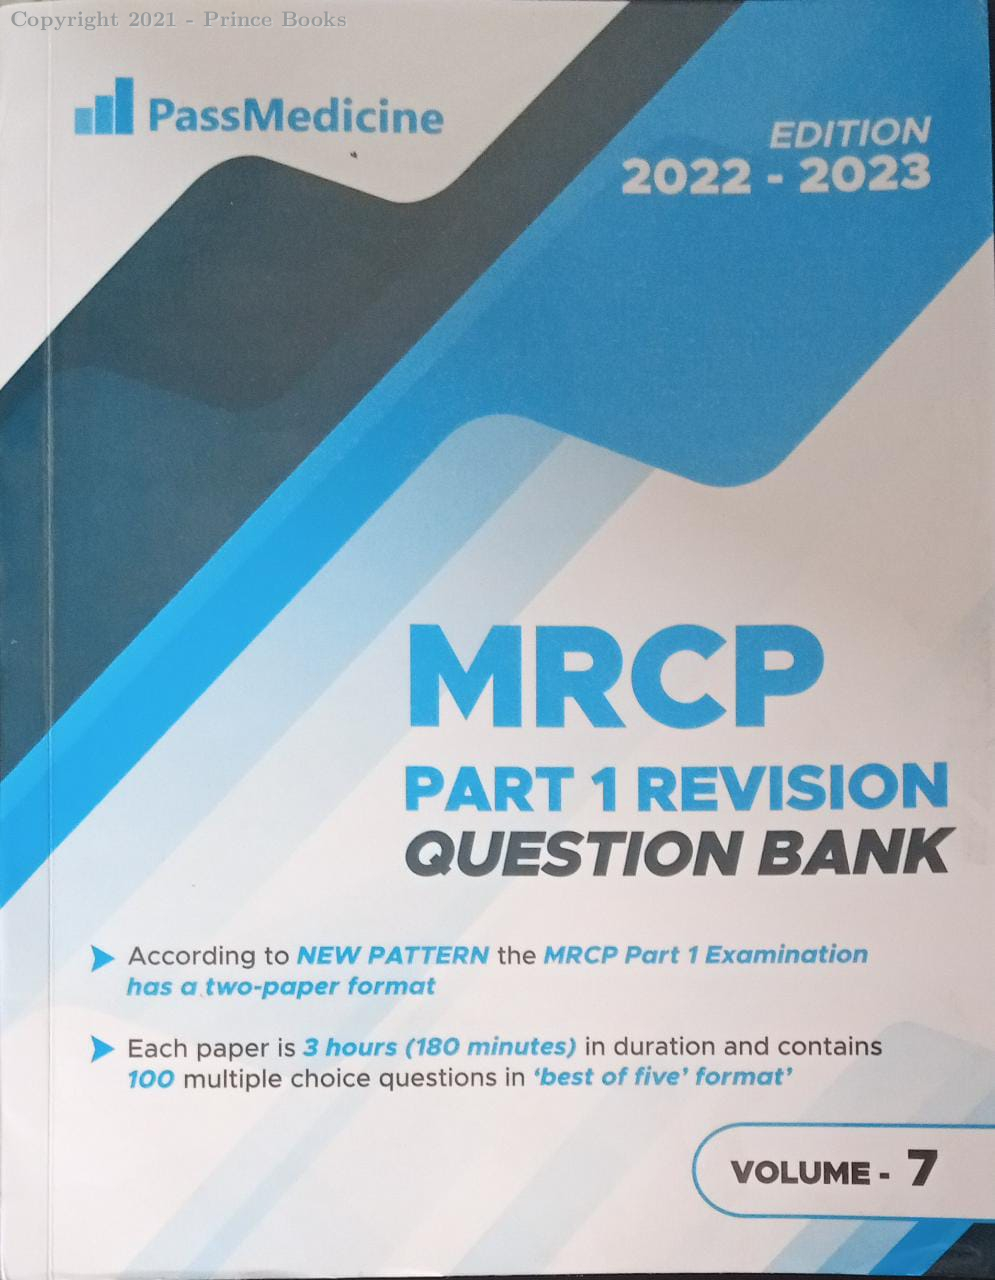 PASSMEDICINE MRCP PART 1 REVISION QUESTION BANK, 7 VOLUME SET